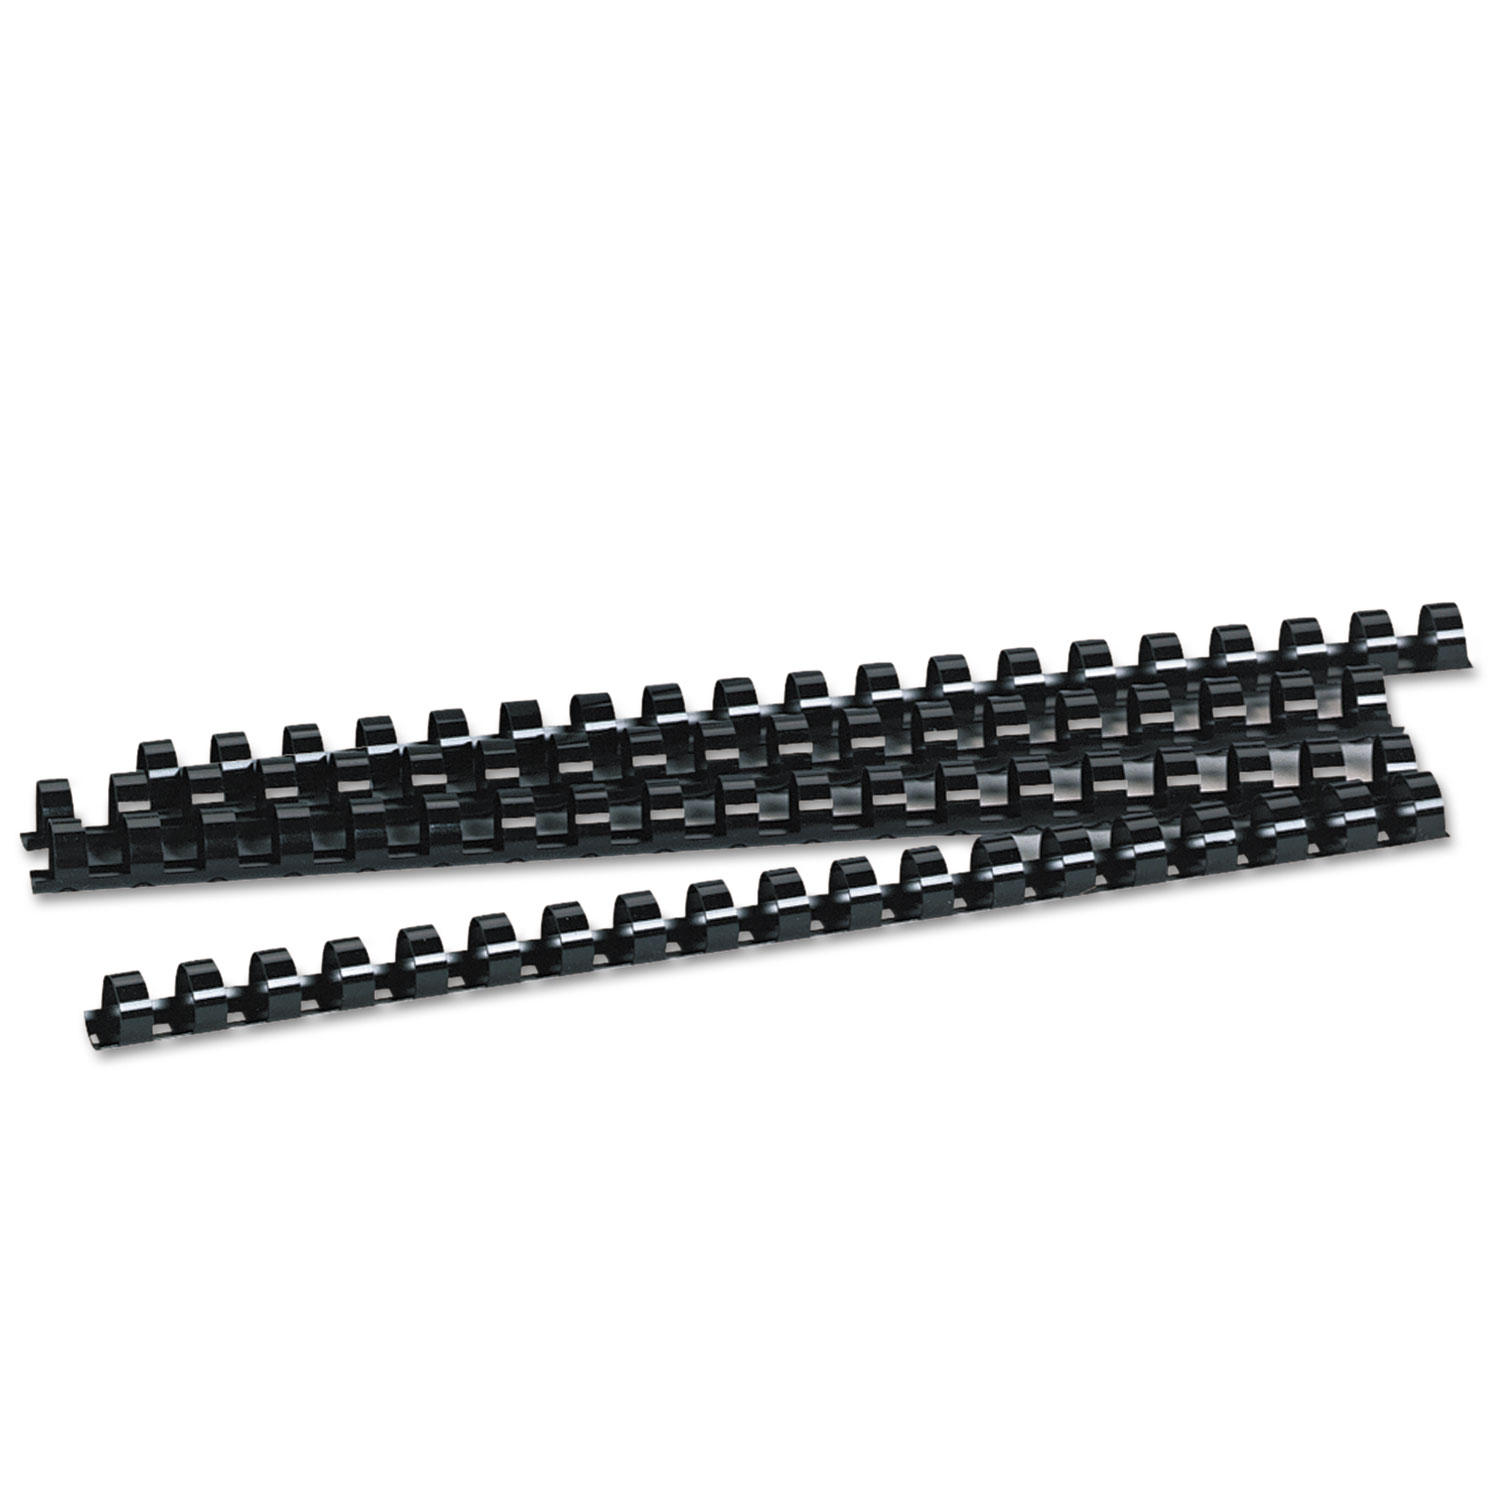 Plastic Comb Bindings, 1/2 Diameter, 90 Sheet Capacity, Black, 100 Combs/Pack